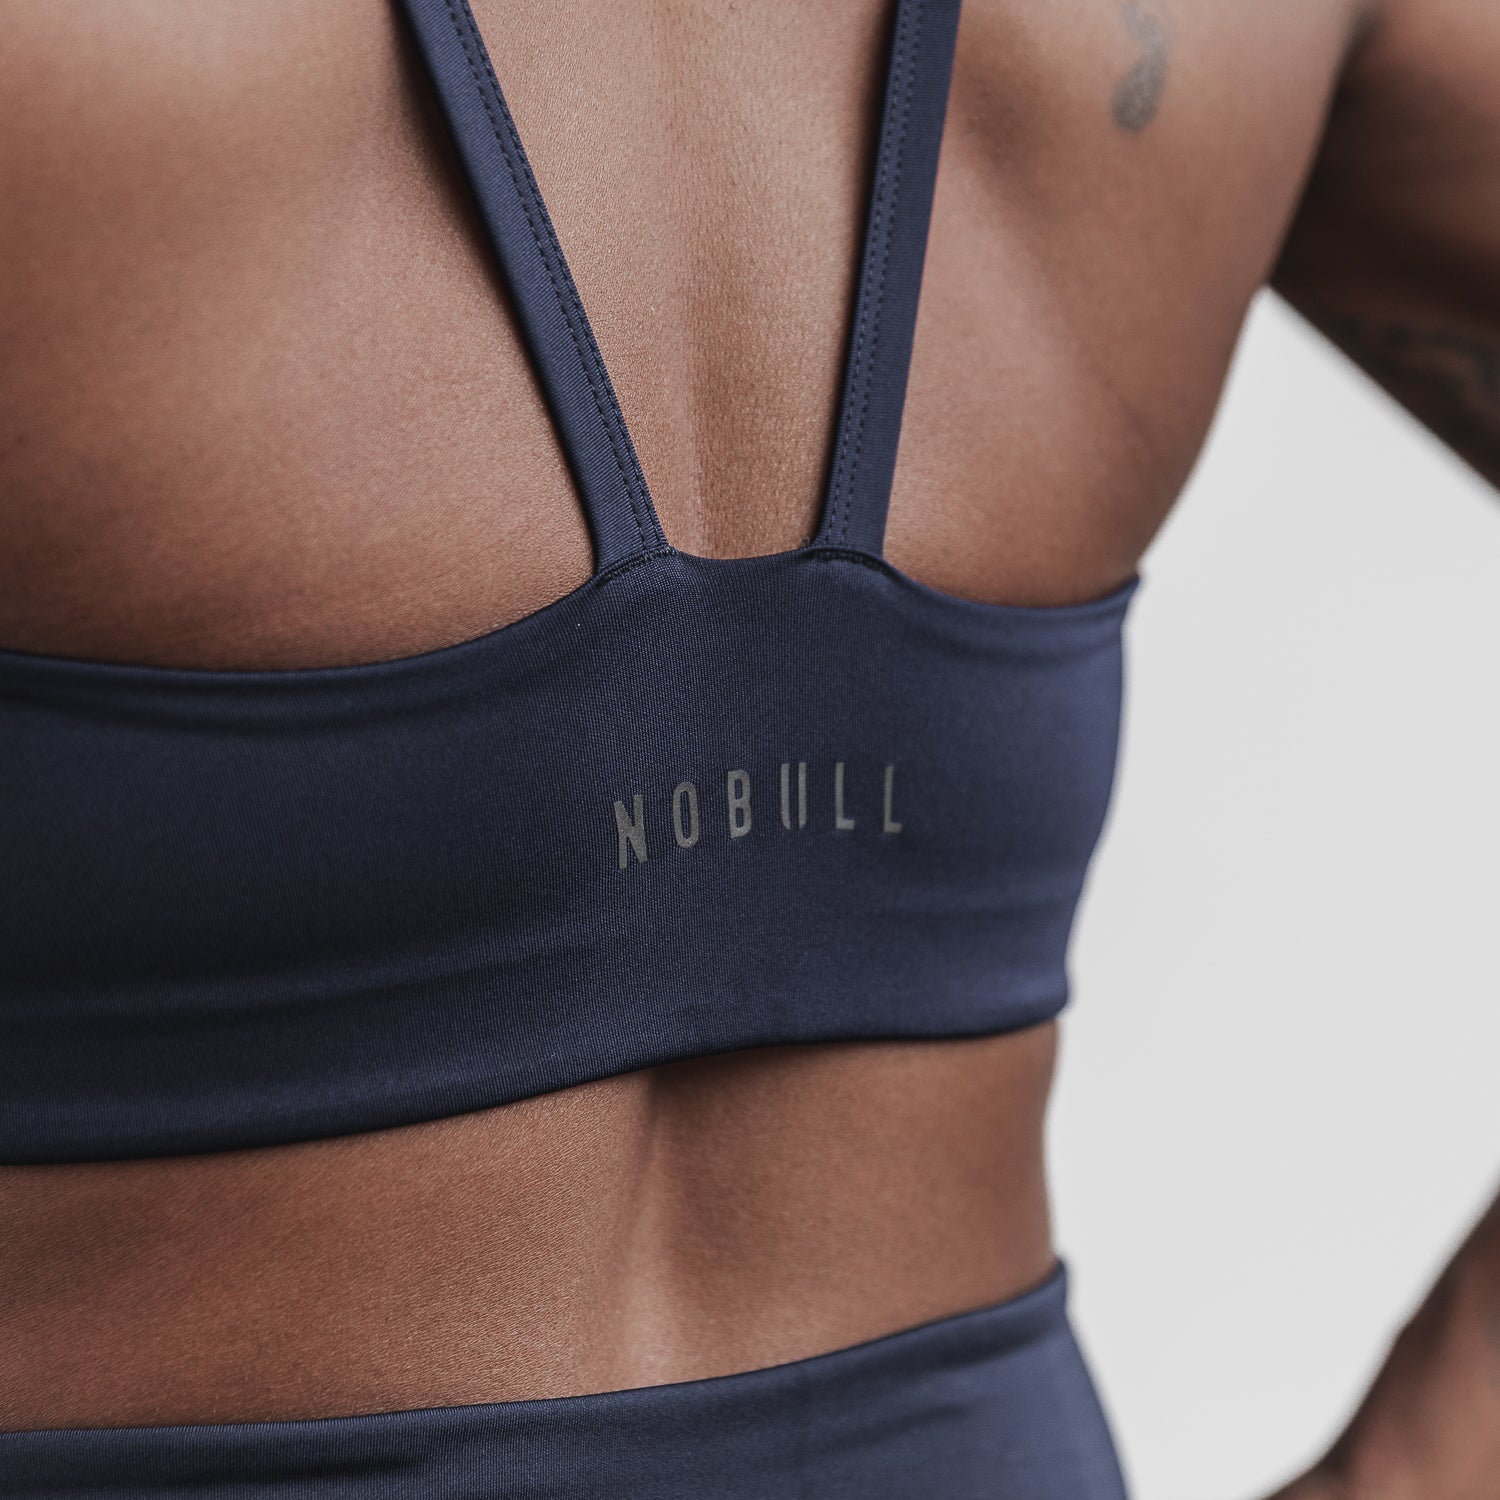 NOBULL Blue Sports Bras for Women